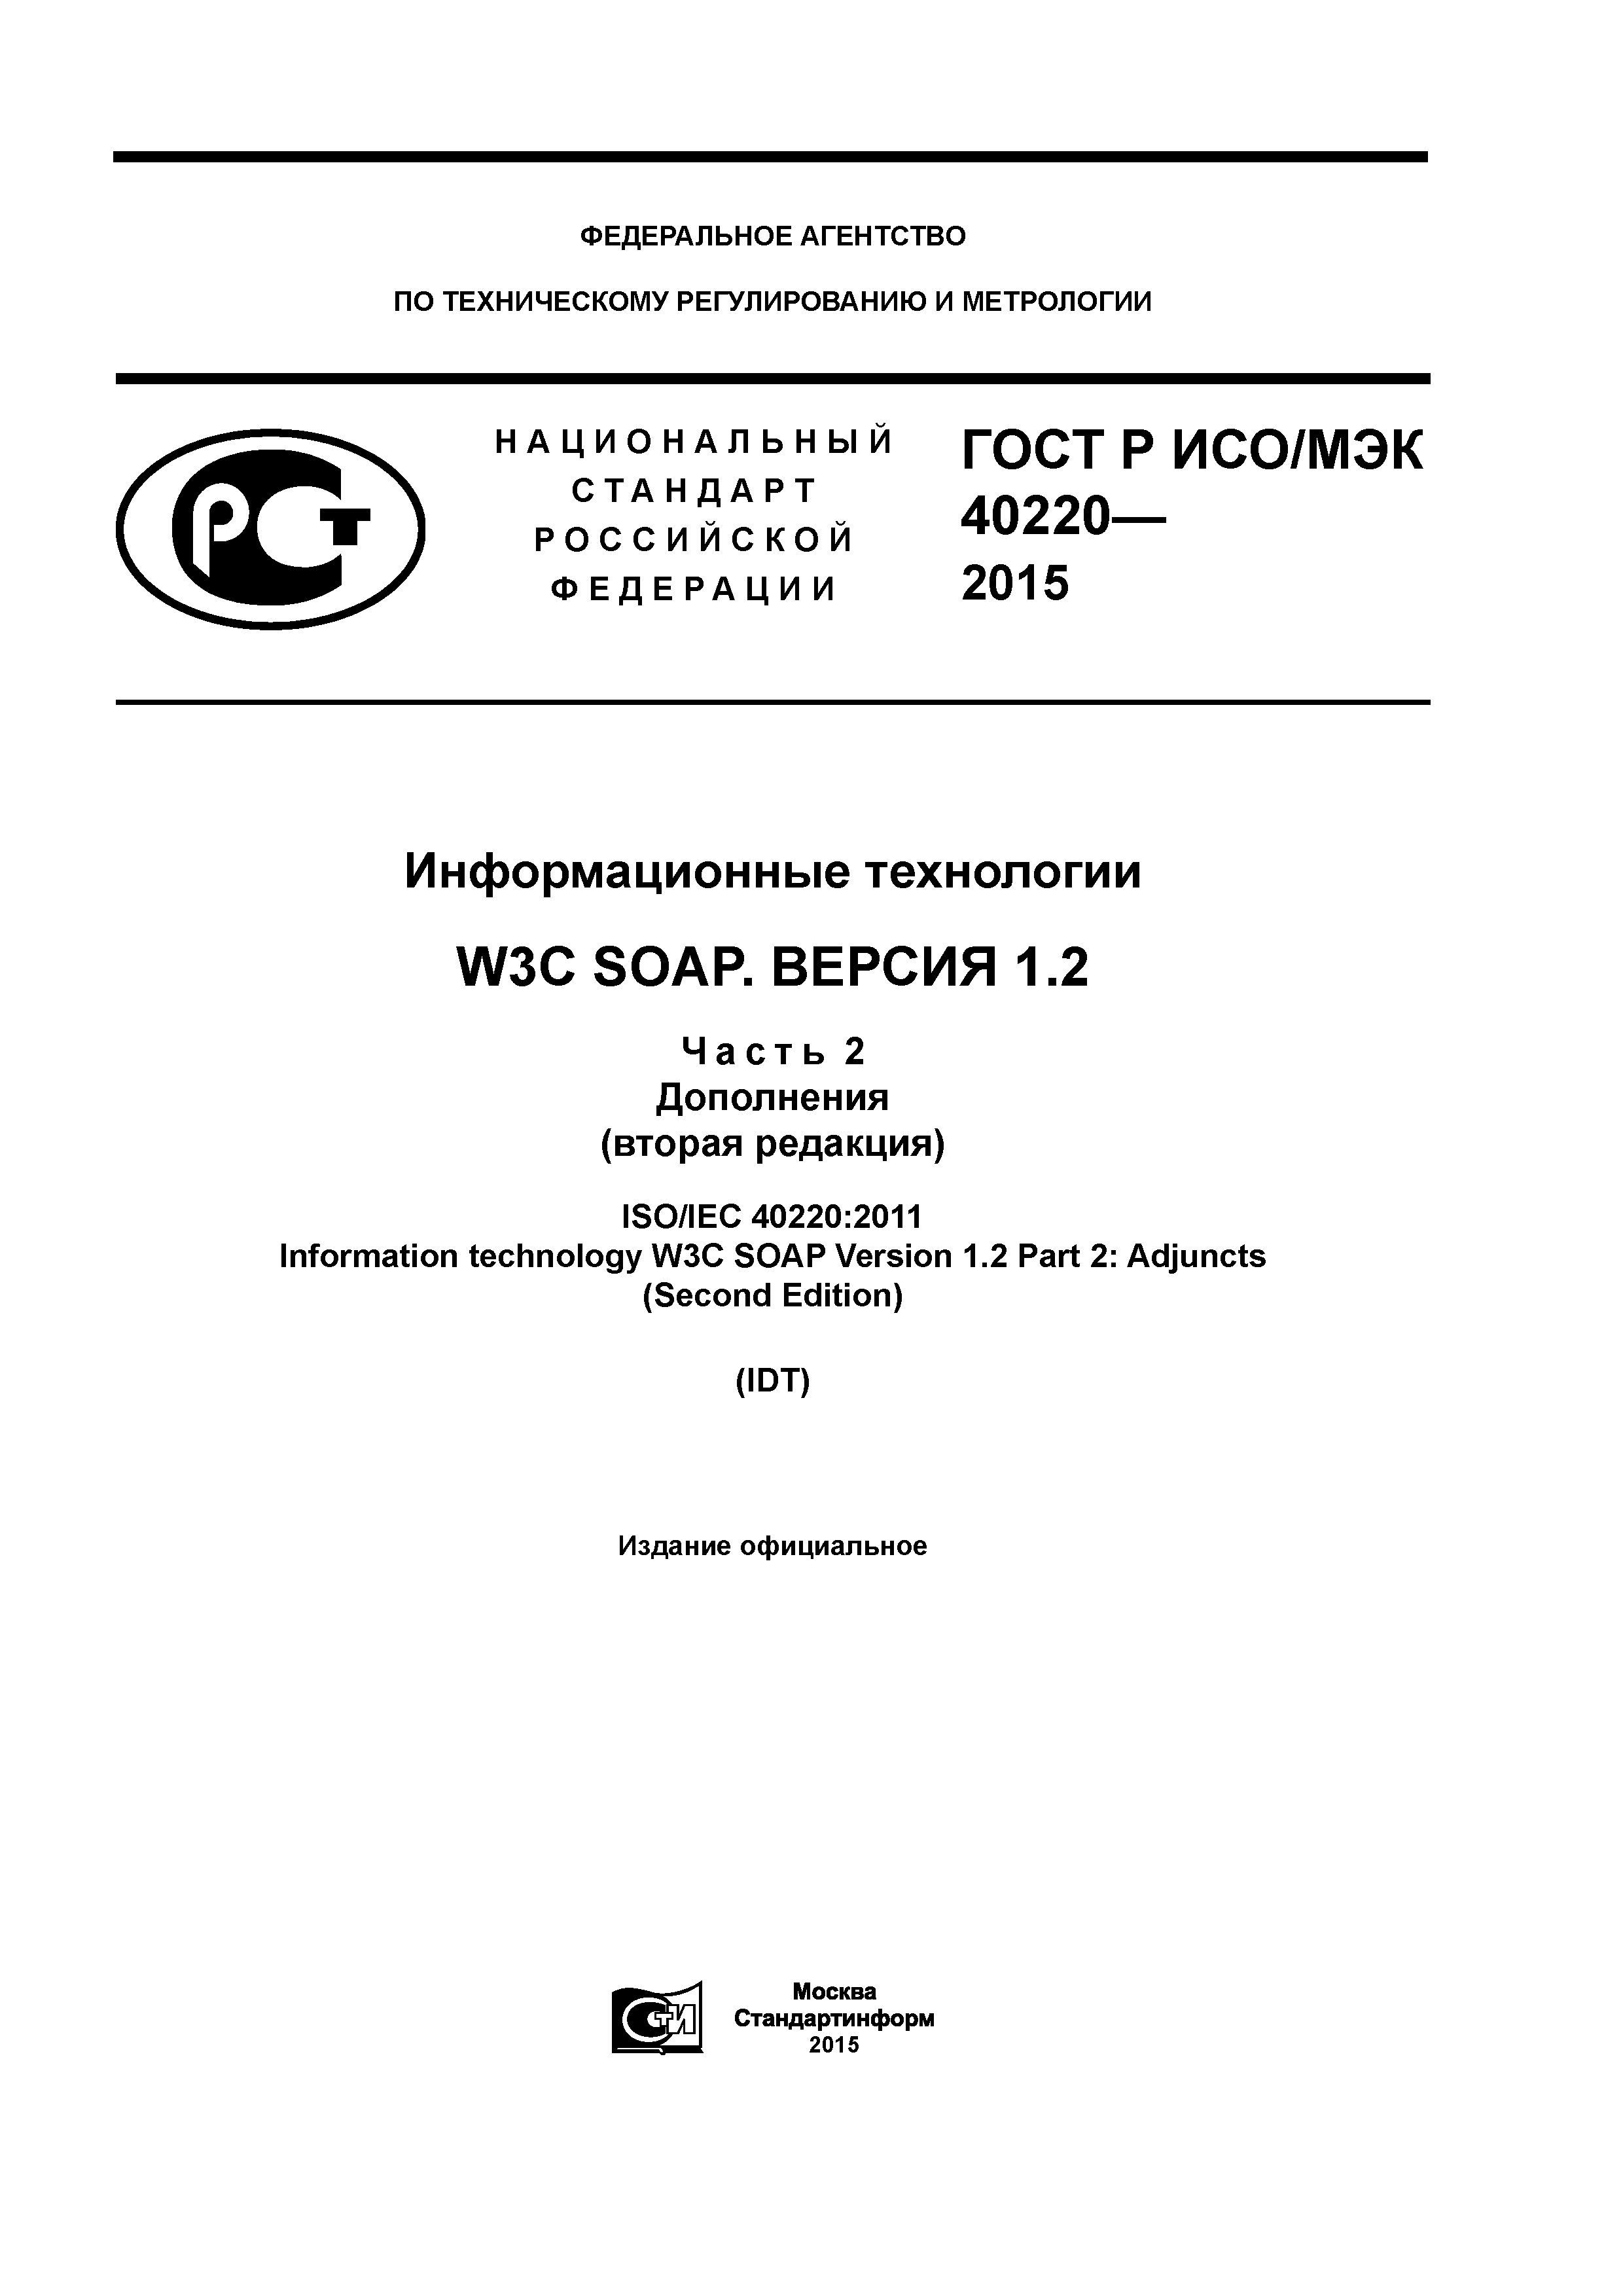 ГОСТ Р ИСО/МЭК 40220-2015